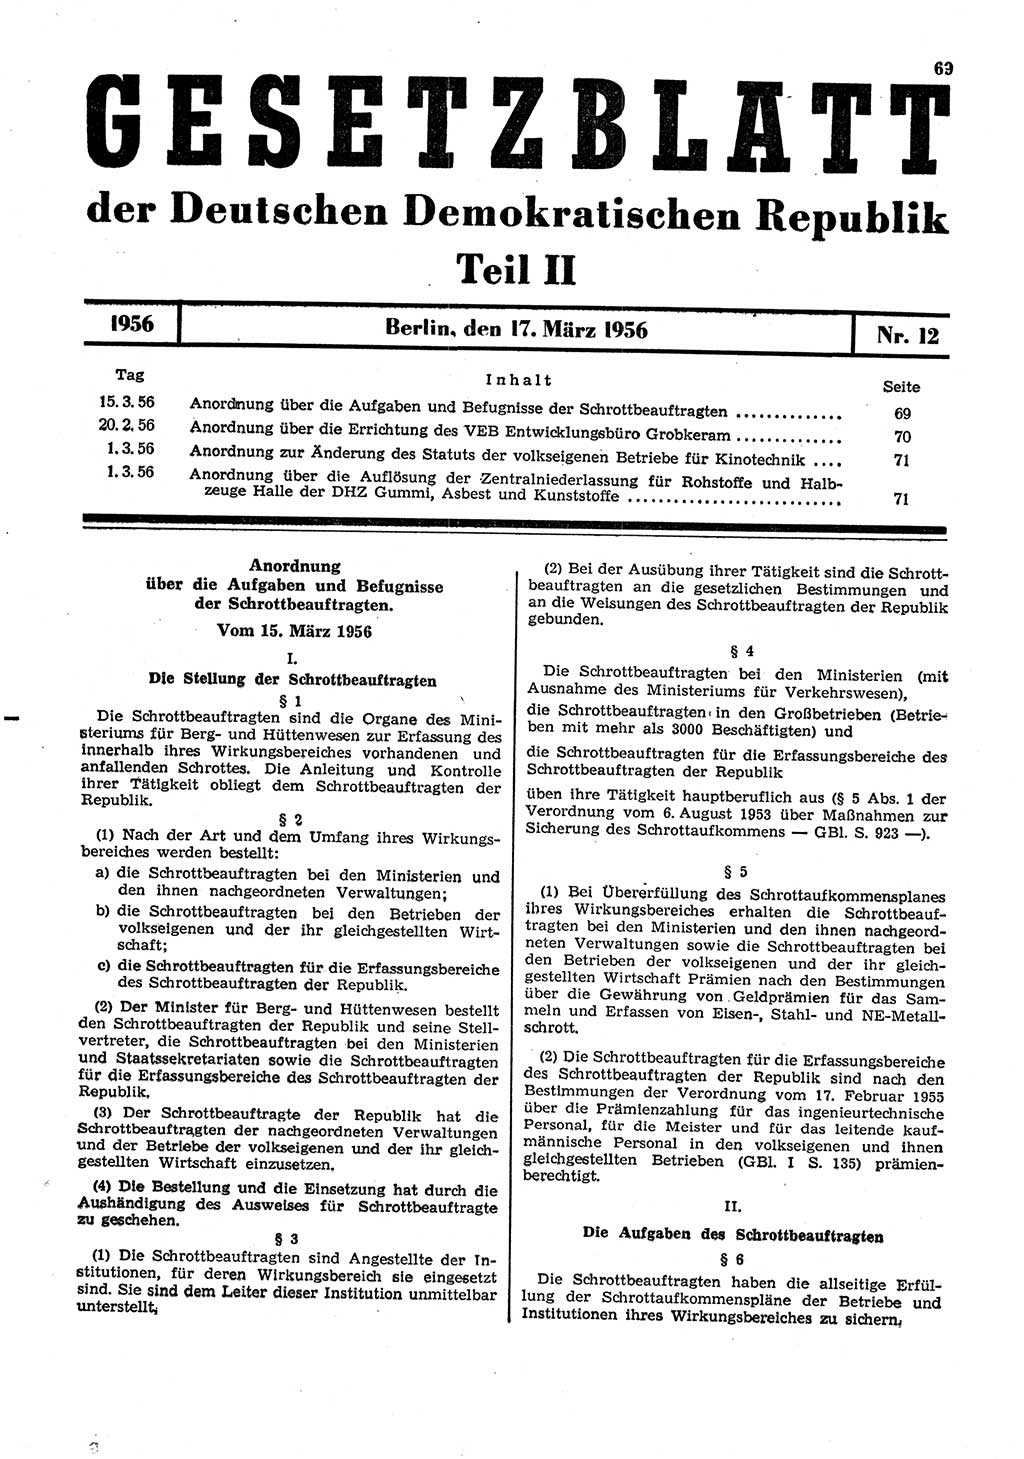 Gesetzblatt (GBl.) der Deutschen Demokratischen Republik (DDR) Teil ⅠⅠ 1956, Seite 69 (GBl. DDR ⅠⅠ 1956, S. 69)